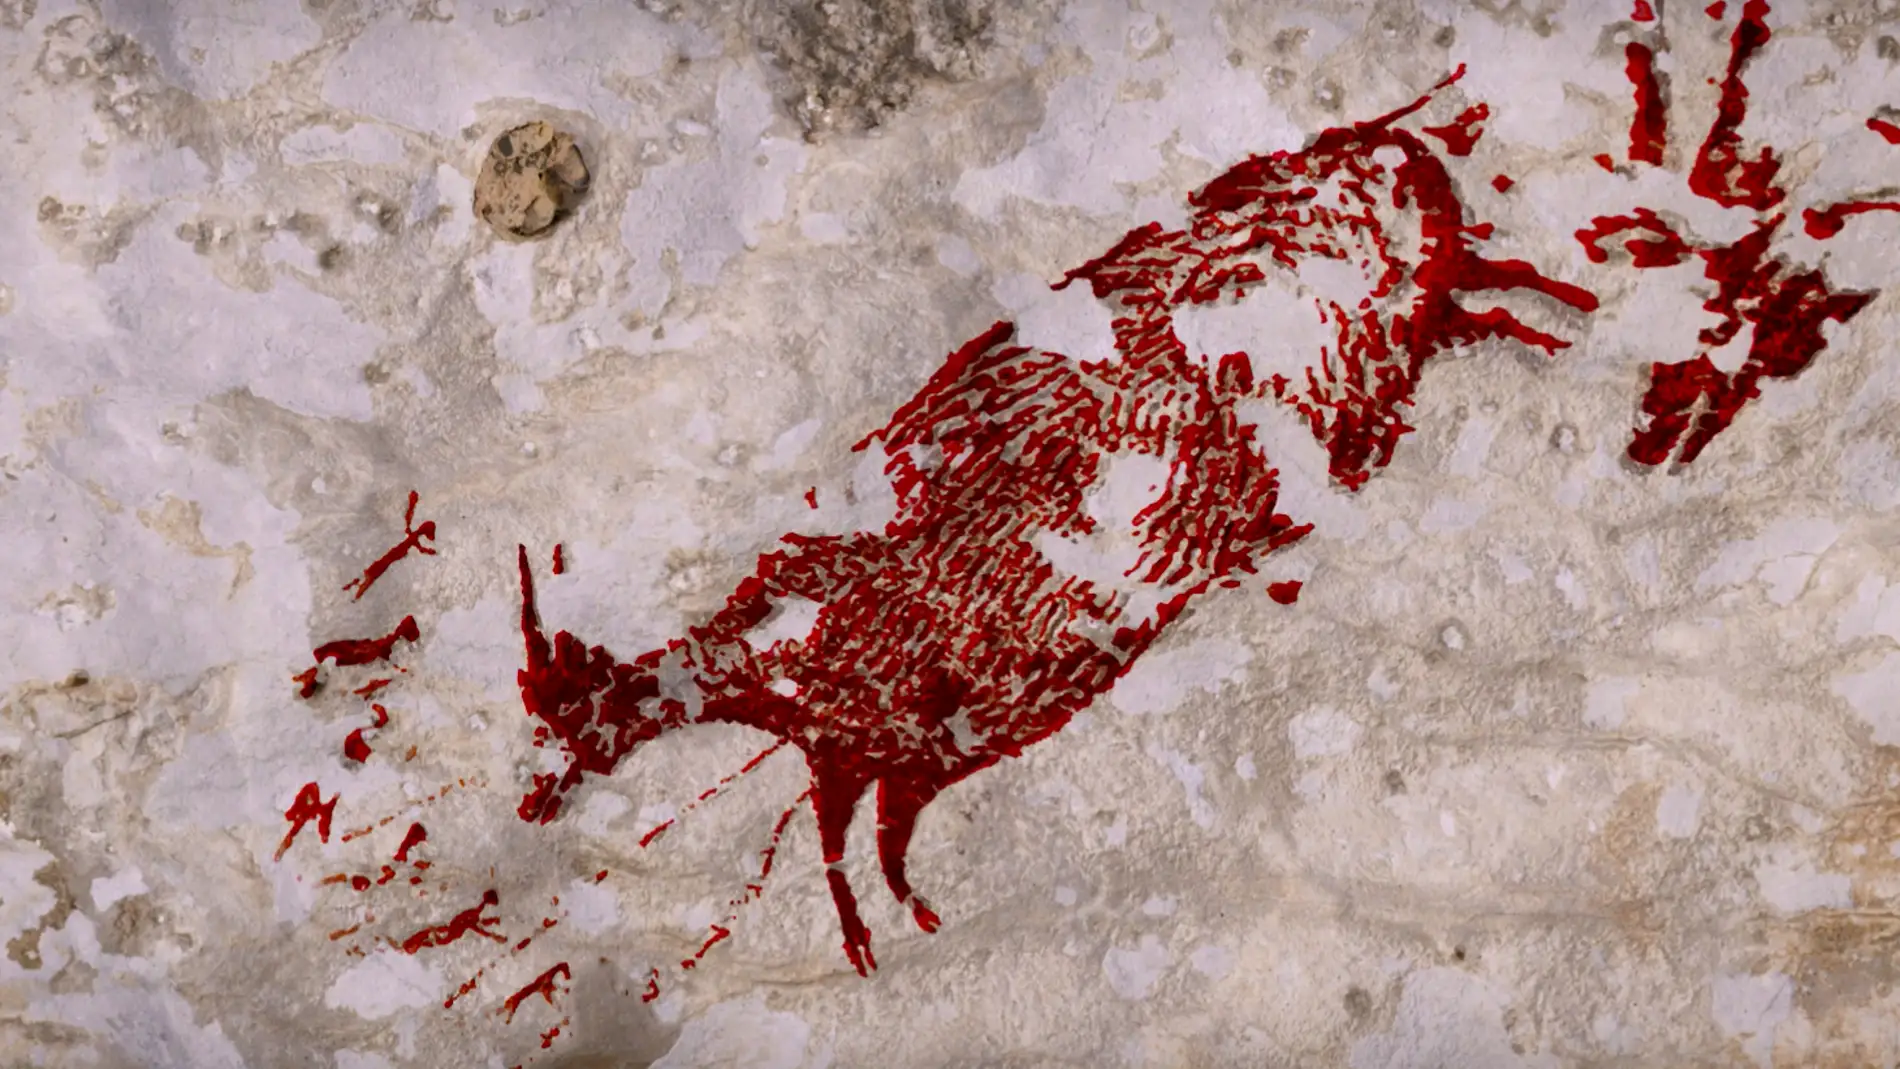 Pinturas rupestres adelantan el origen de las creencias en seres sobrenaturales